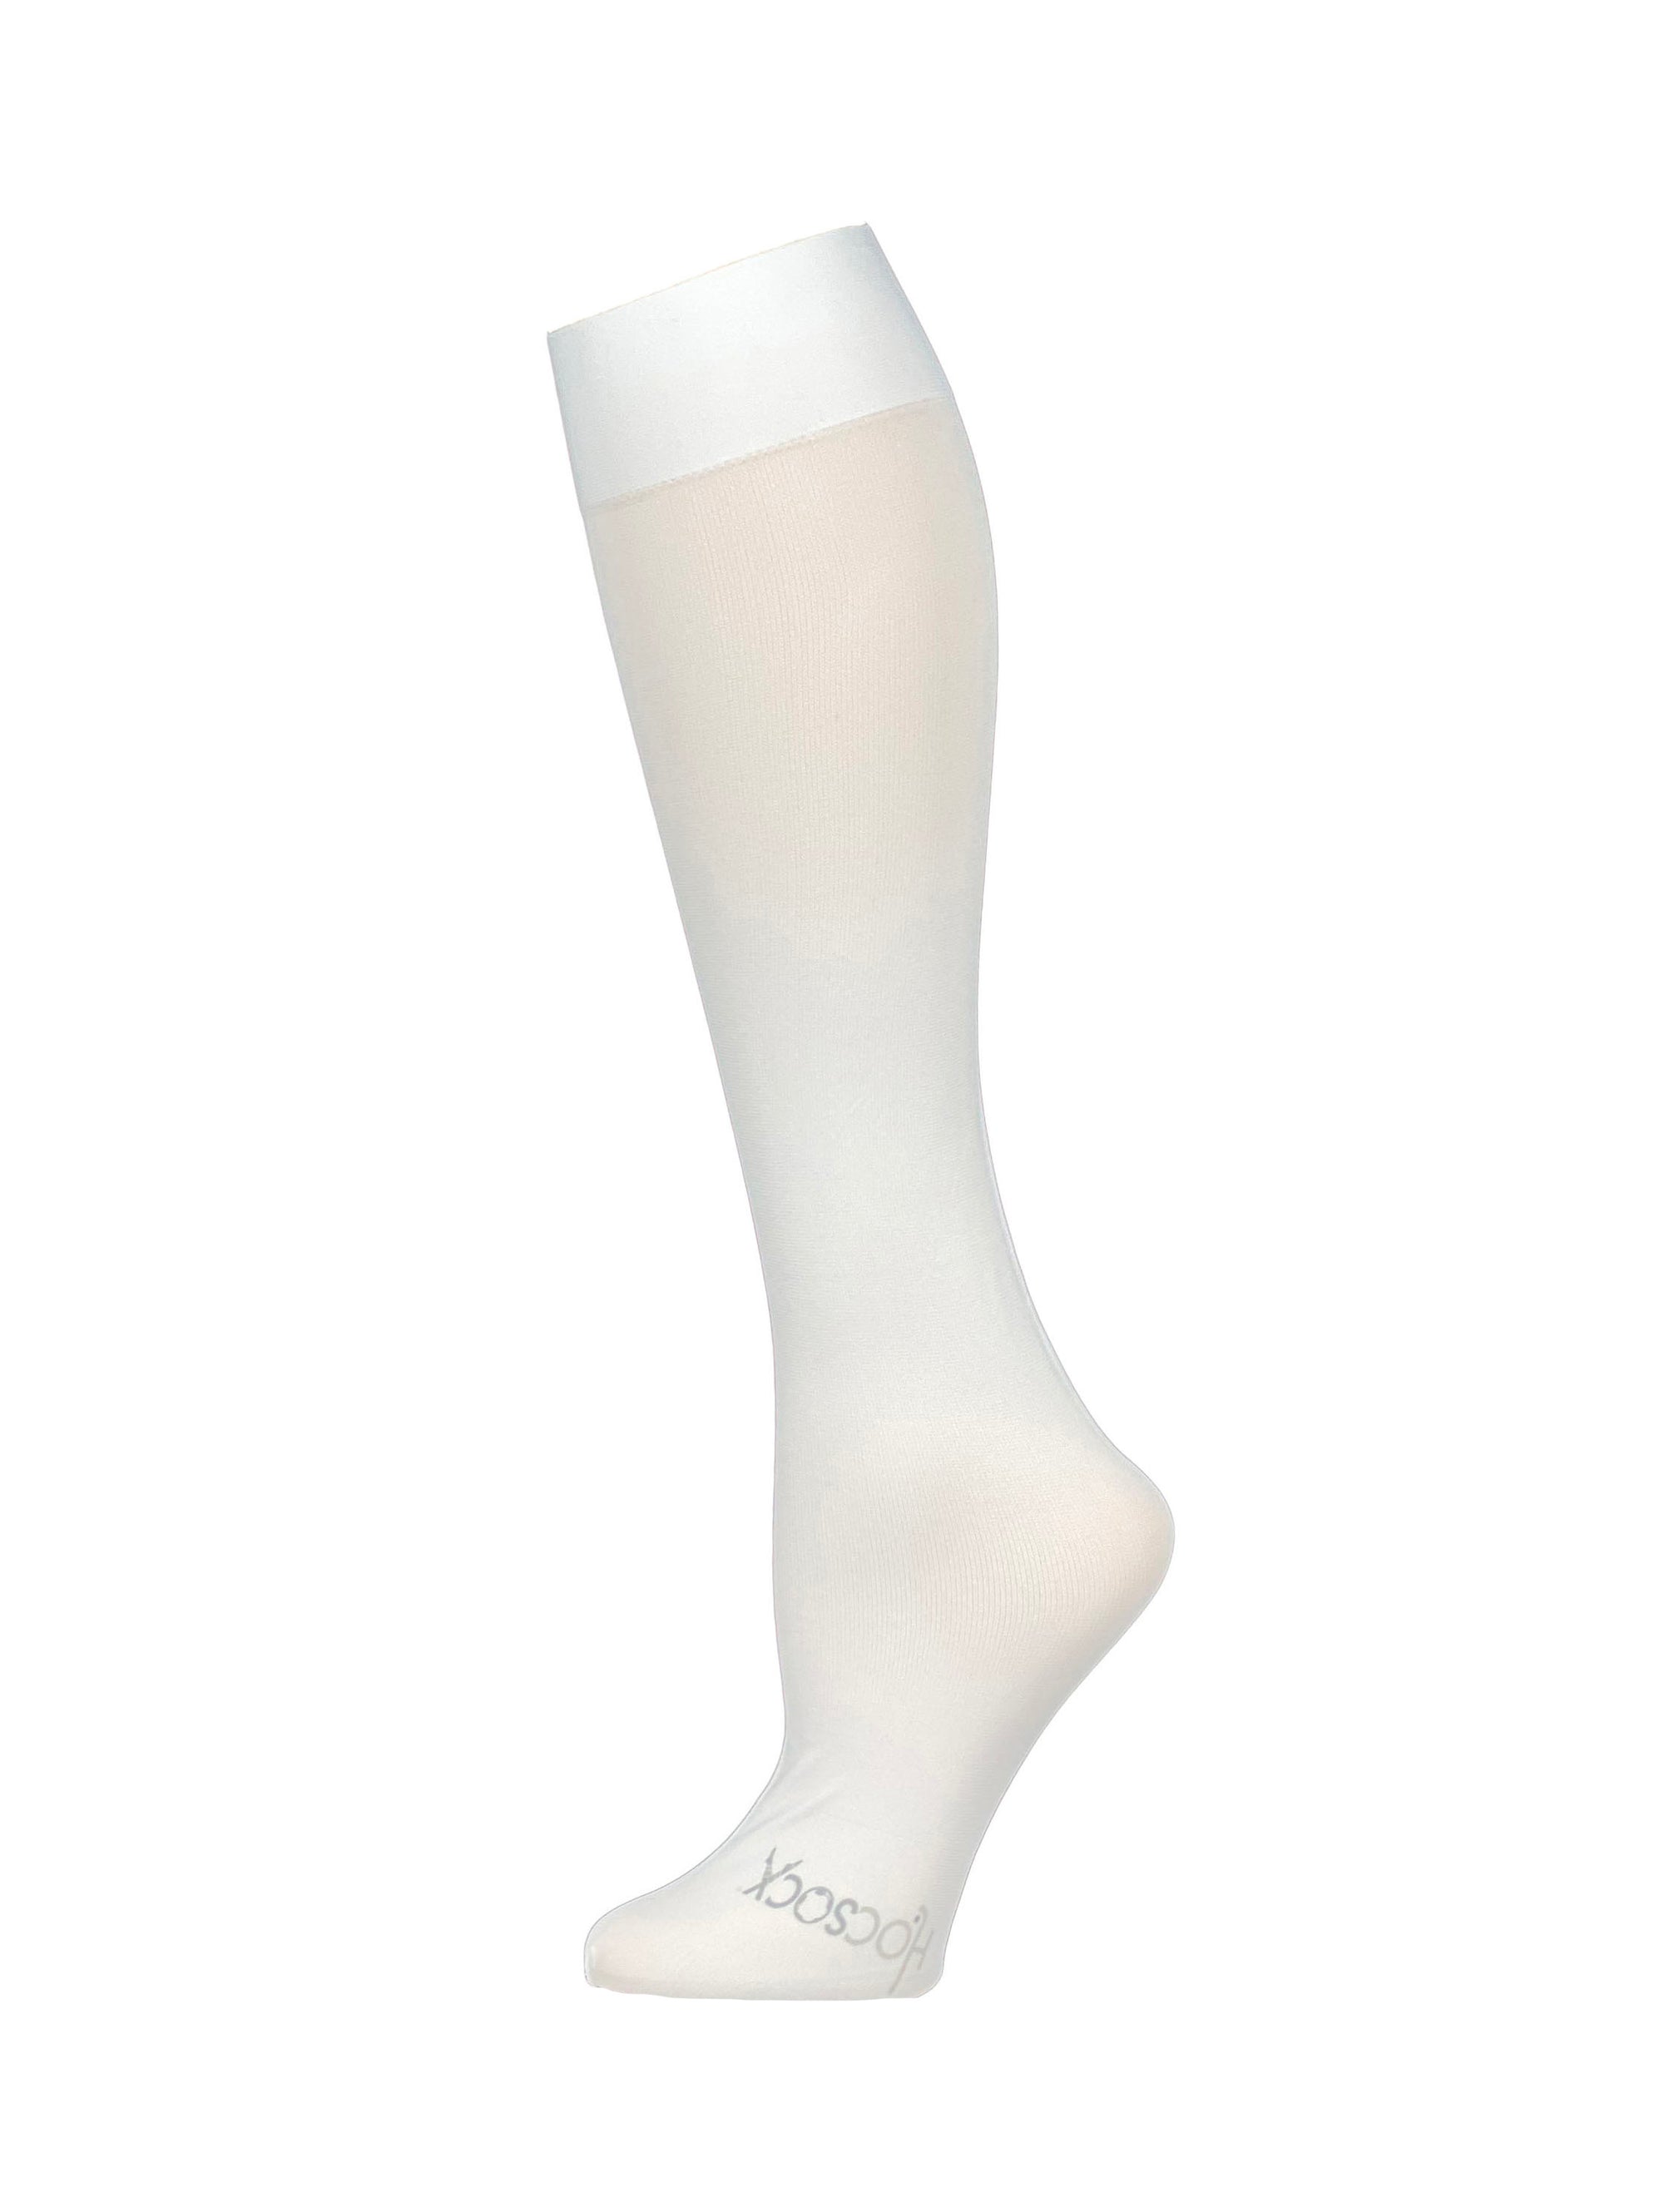 Hocsocx White Leg Sleeves – Hocsocx Inc